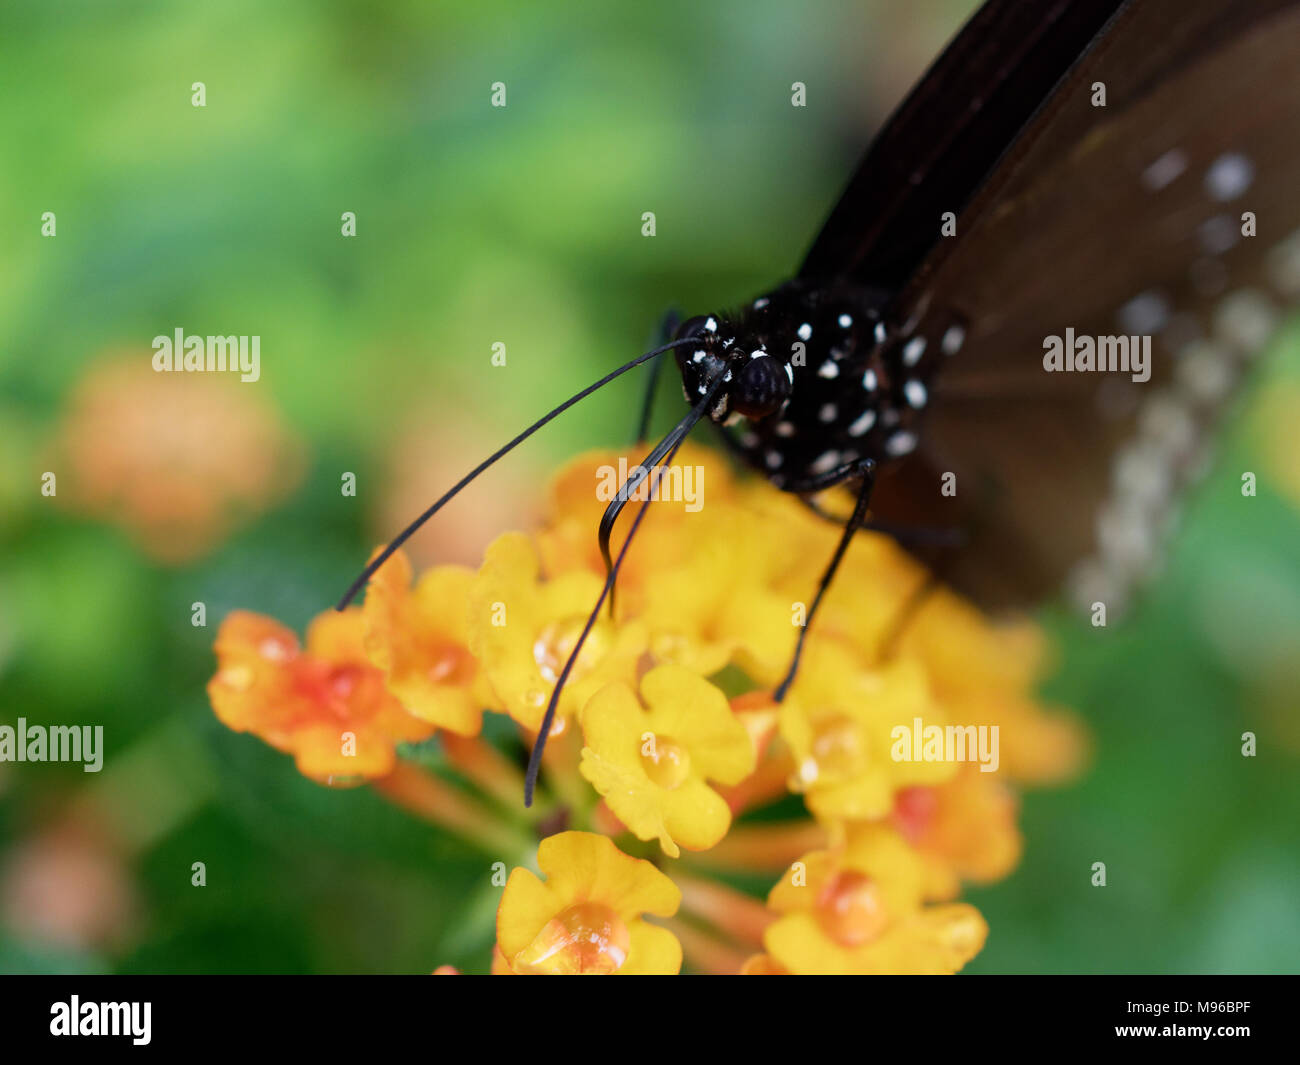 Mariposa Negra con mancha blanca en estrecha hasta chupar néctar o jugo de flor de color amarillo sobre fondo verde de la hoja en un jardín. Foto de stock